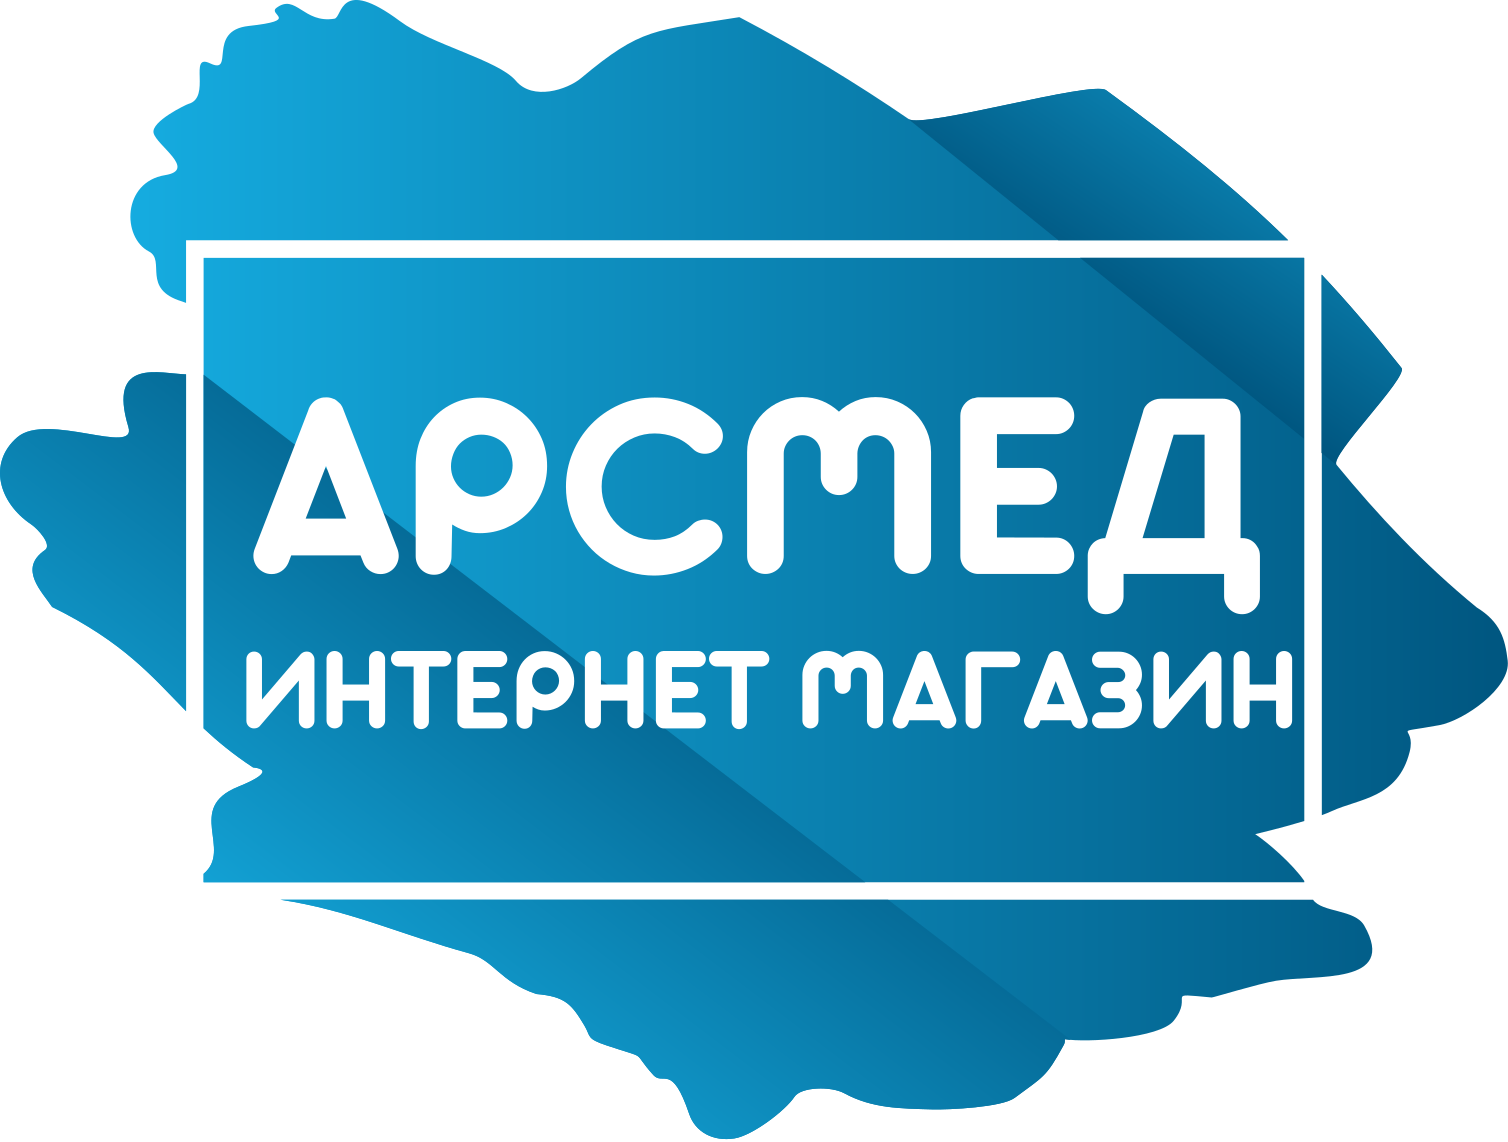 49-й Московский международный стоматологический форум и выставка I Дентал салон 2021